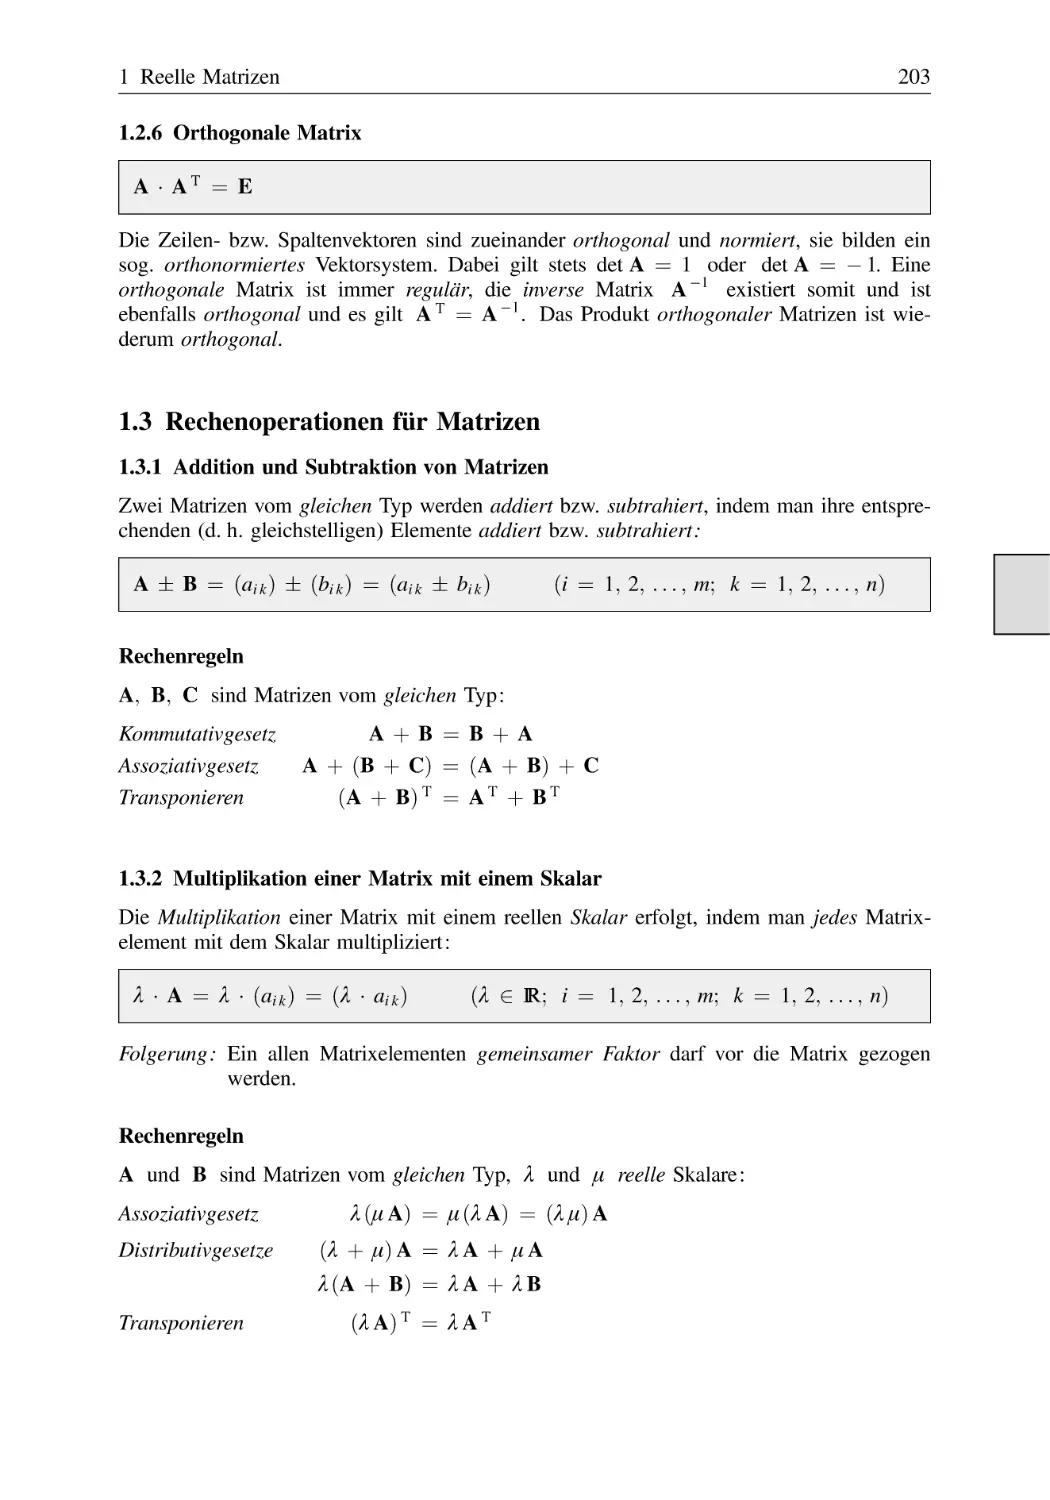 1.2.6 Orthogonale Matrix
1.3 Rechenoperationen für Matrizen
1.3.1 Addition und Subtraktion von Matrizen
1.3.2 Multiplikation einer Matrix mit einem Skalar